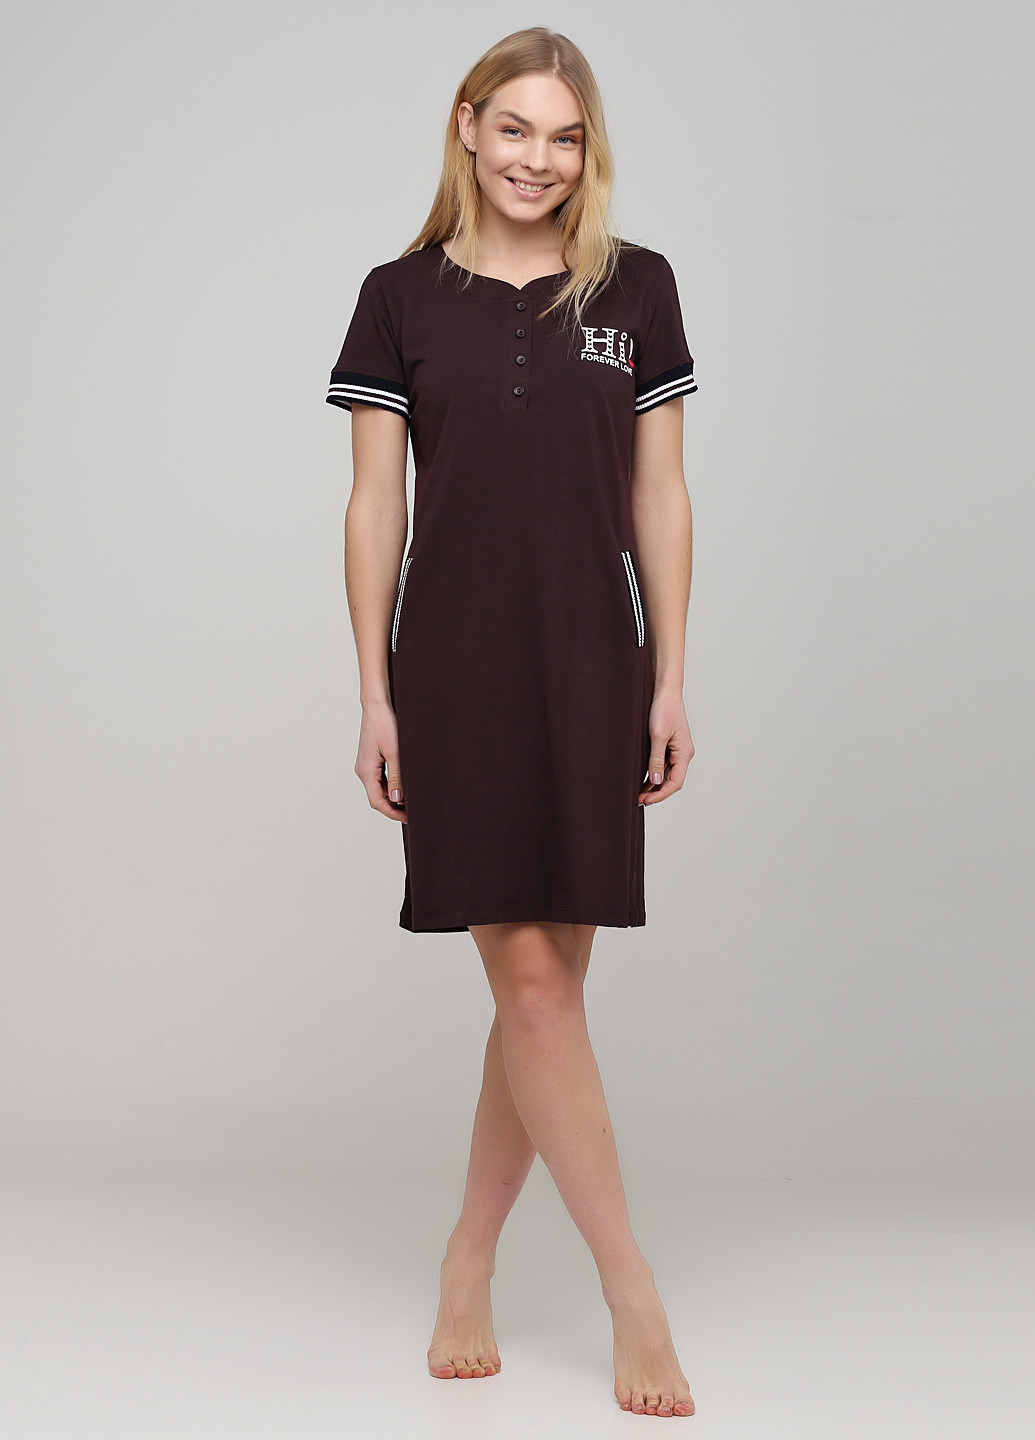 Темно-коричневое домашнее платье платье-футболка ROMEO LIFE с надписью